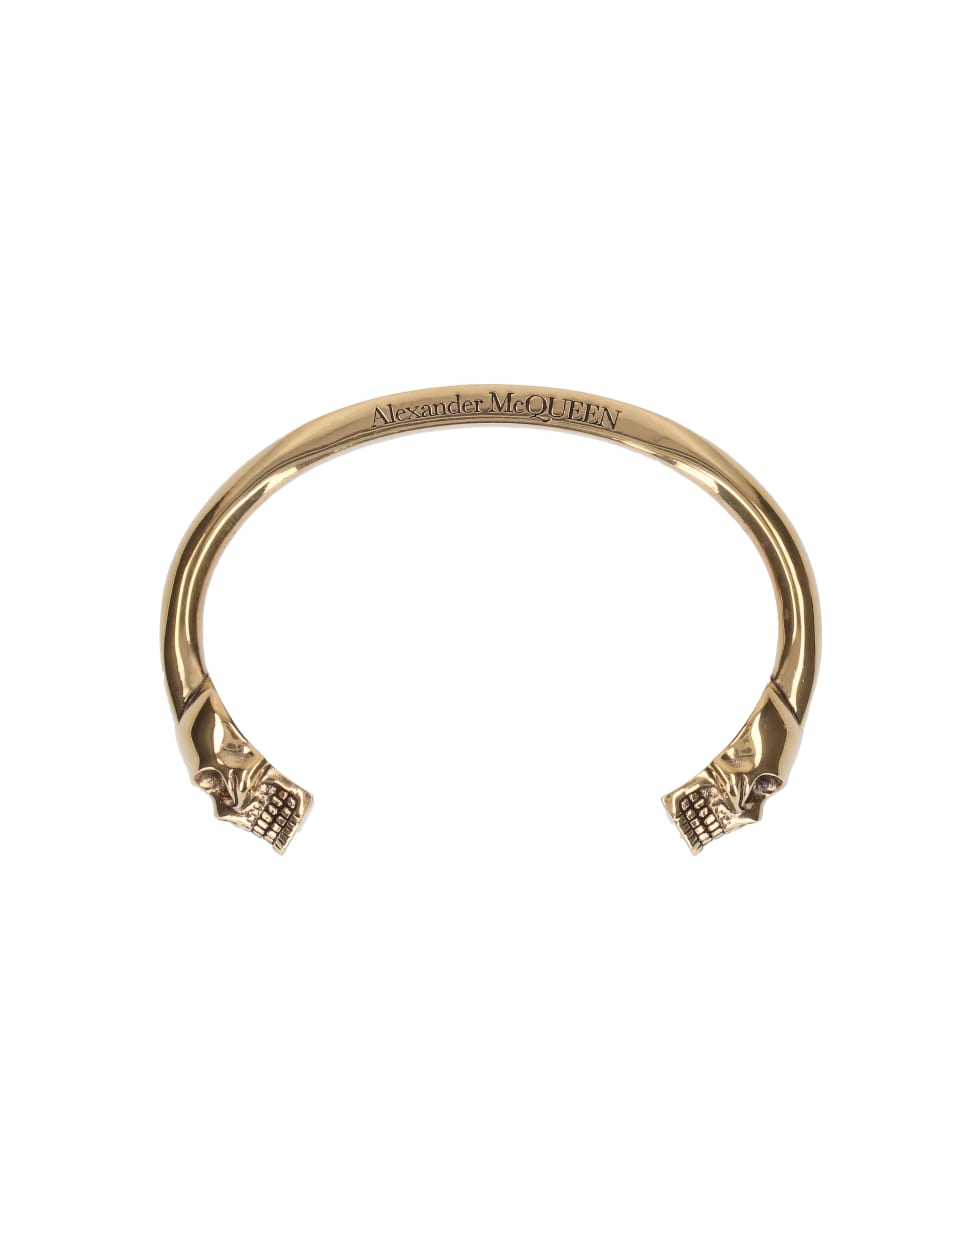 Alexander McQueen Jewelry - Gold